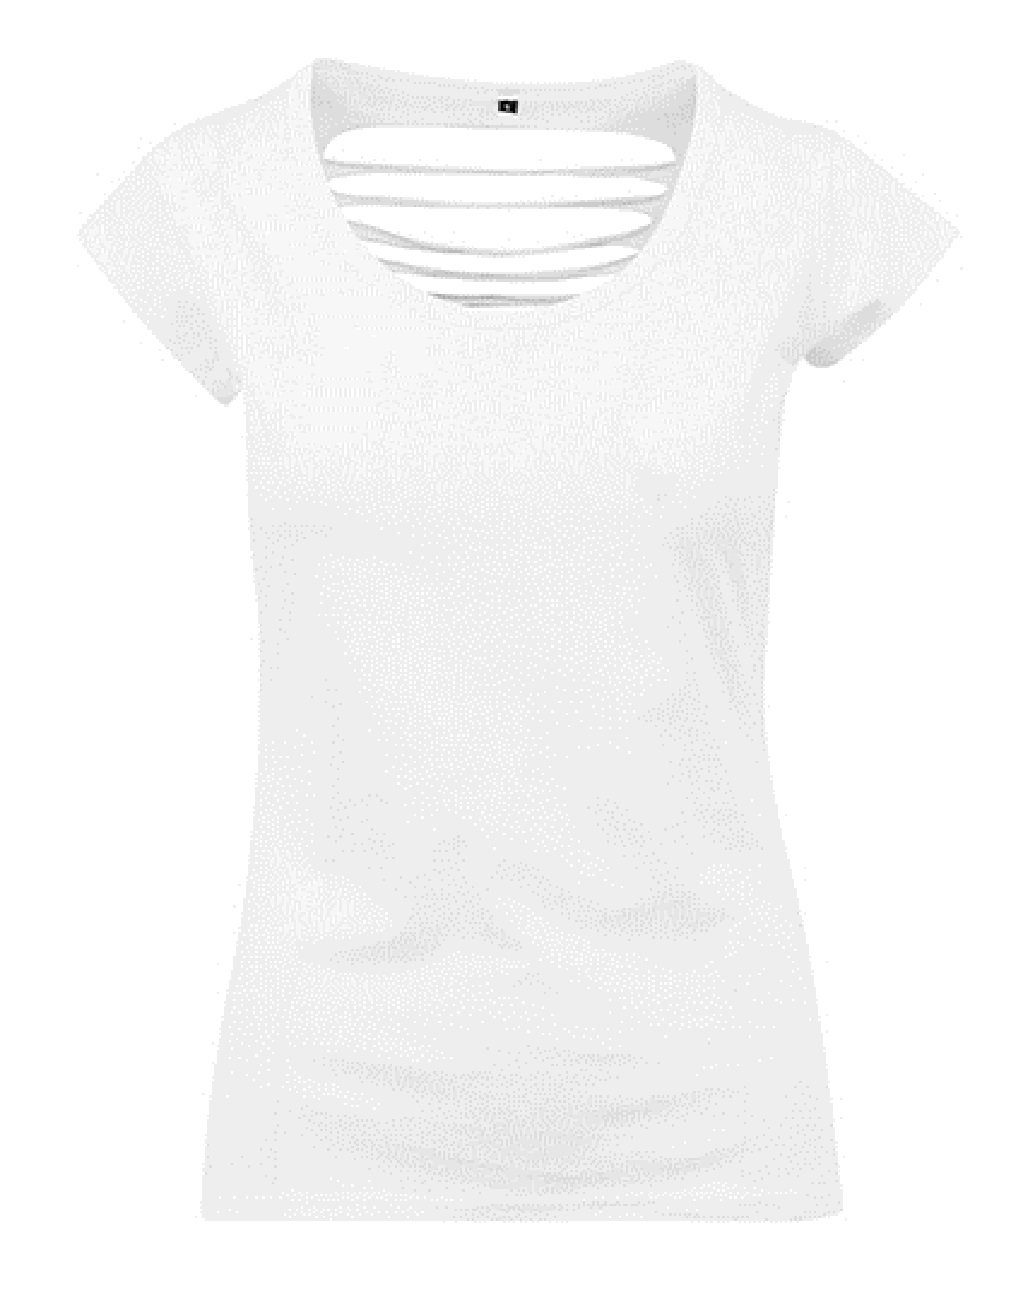 WITORU T-Shirt Nackenfreies Damen Shirt für Frauen und Mädchen - 100% Baumwolle (2-tlg) Einzeln oder 2 Stück im Spar-Set